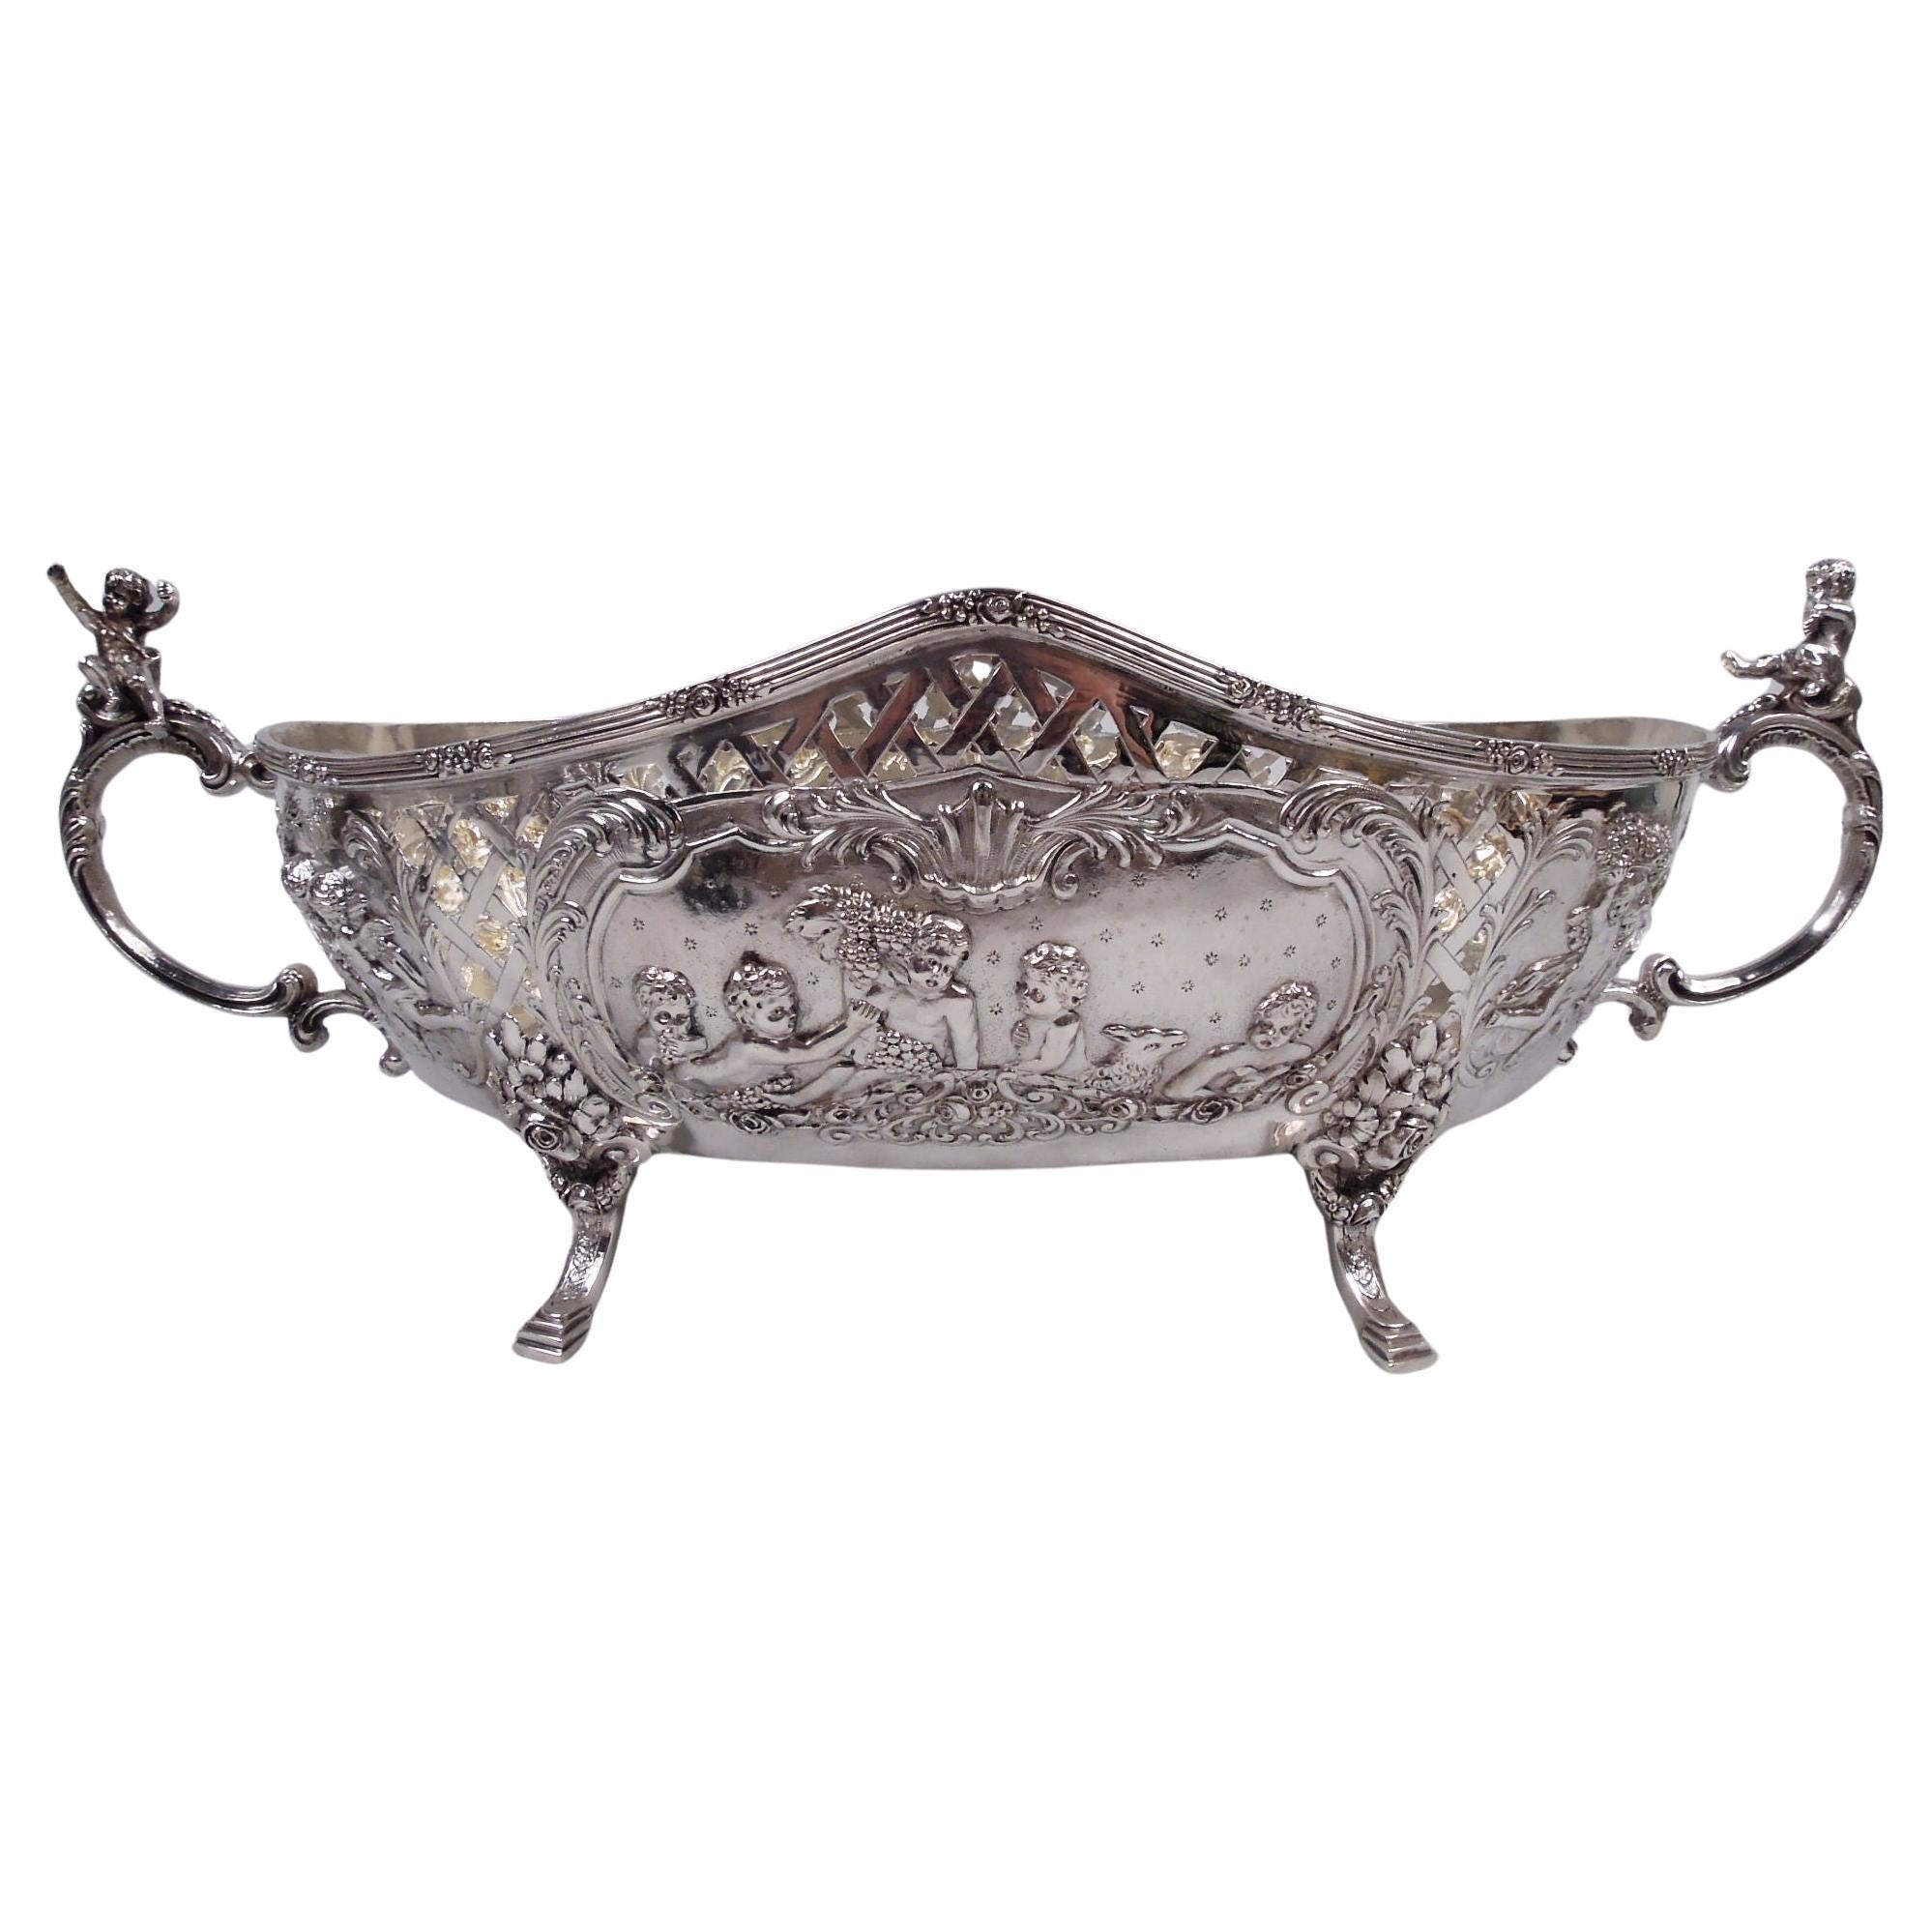 Antique German Classical Silver Centerpiece Bowl C 1910